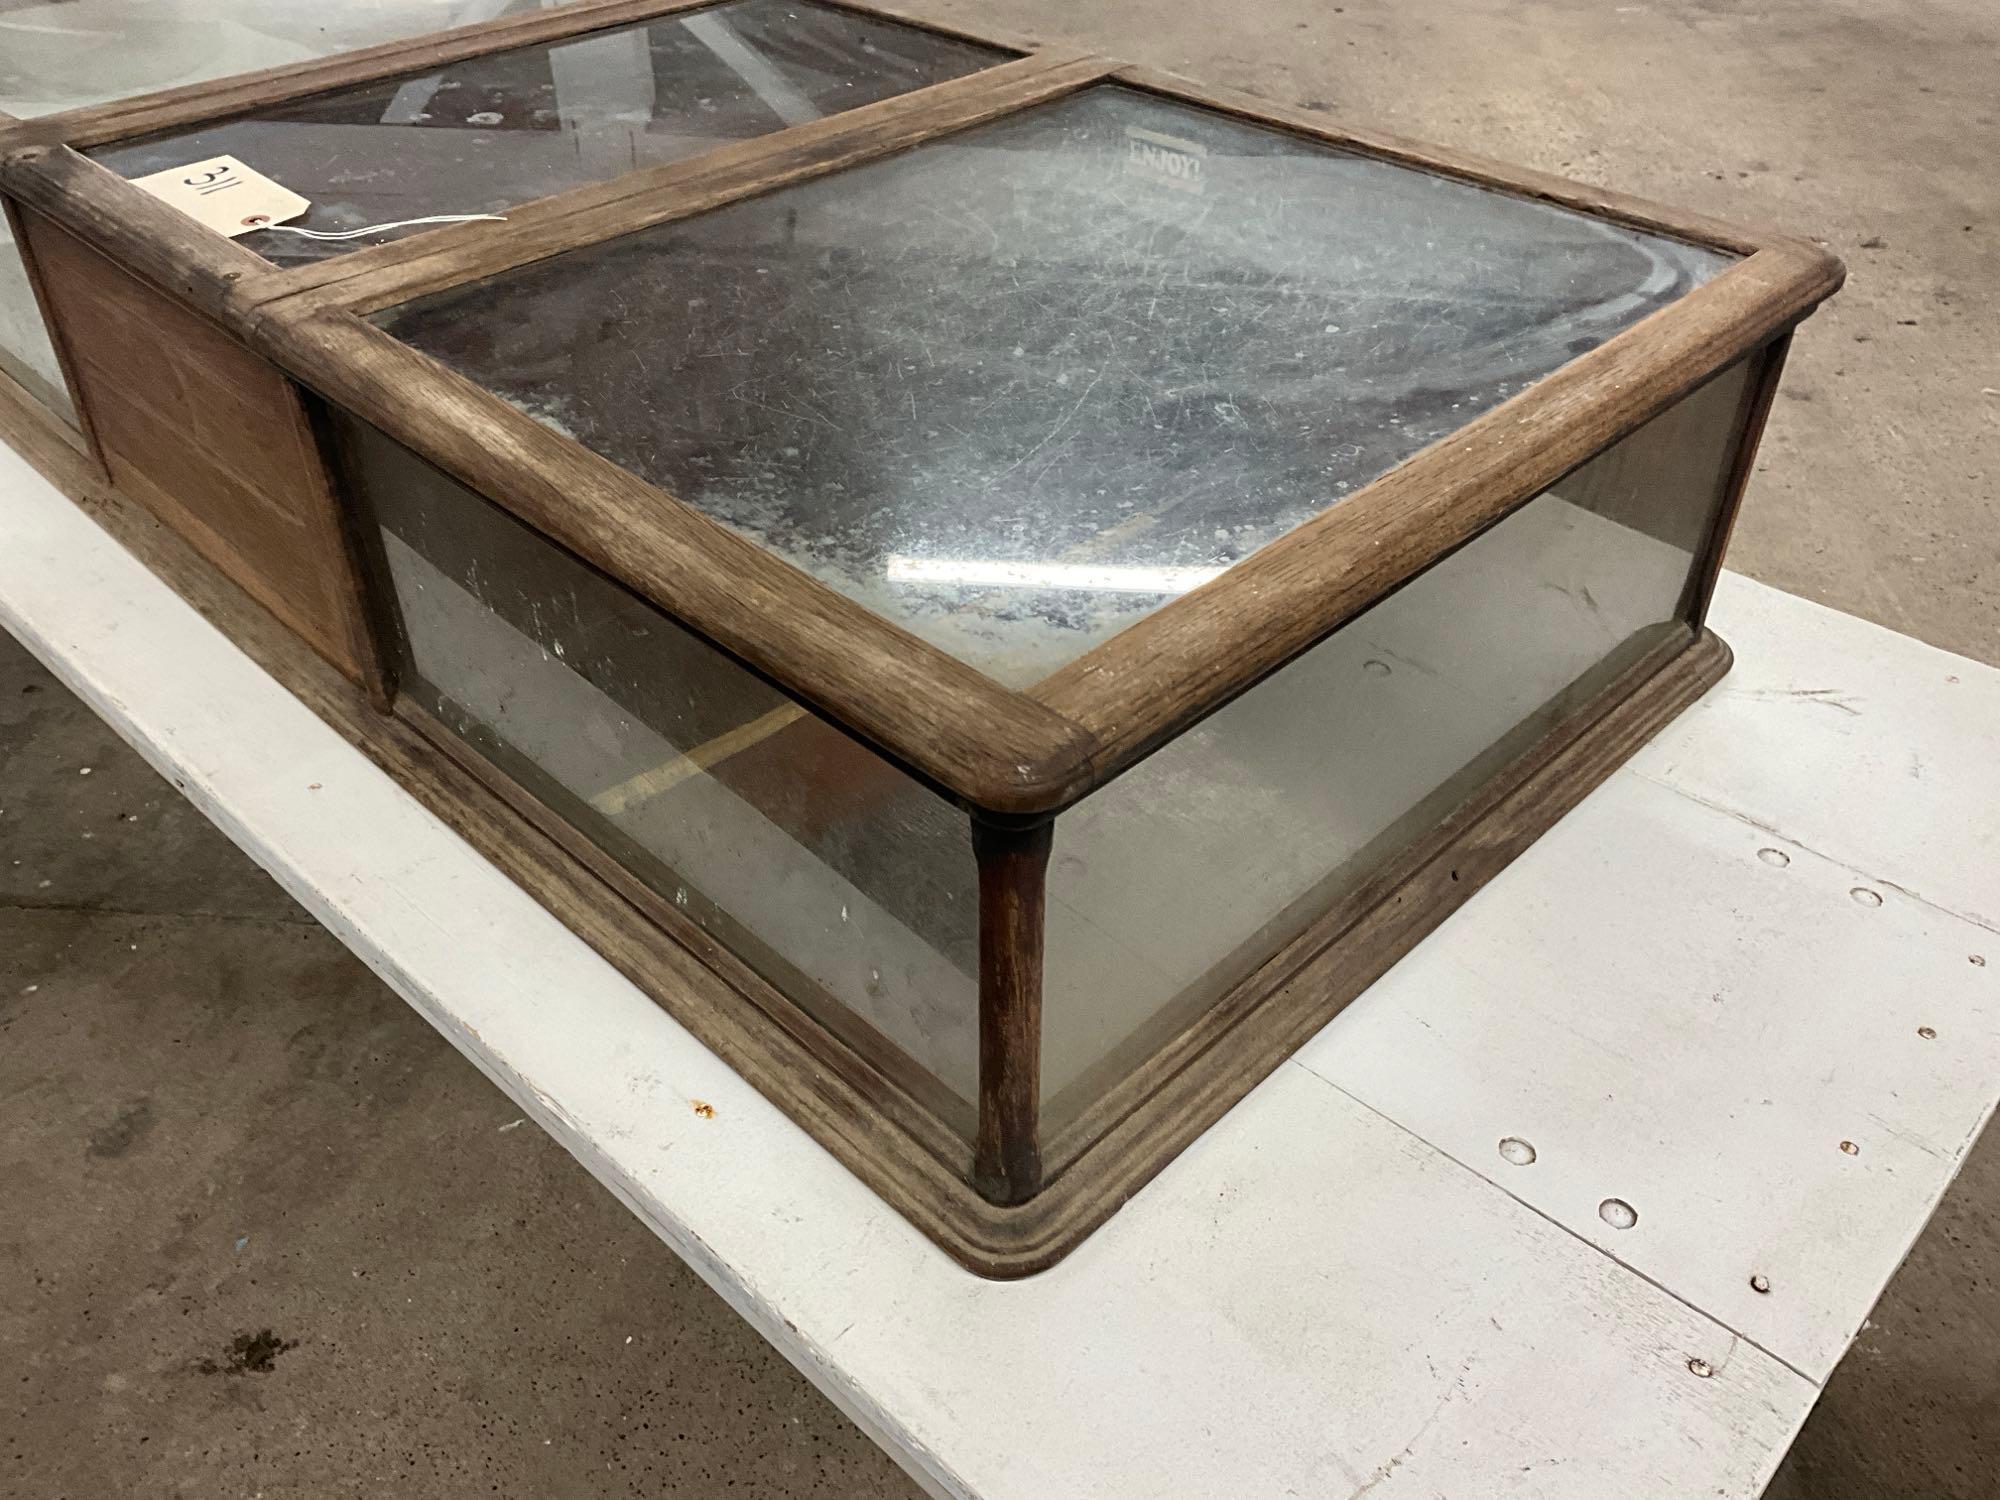 Unique antique oak table top show case